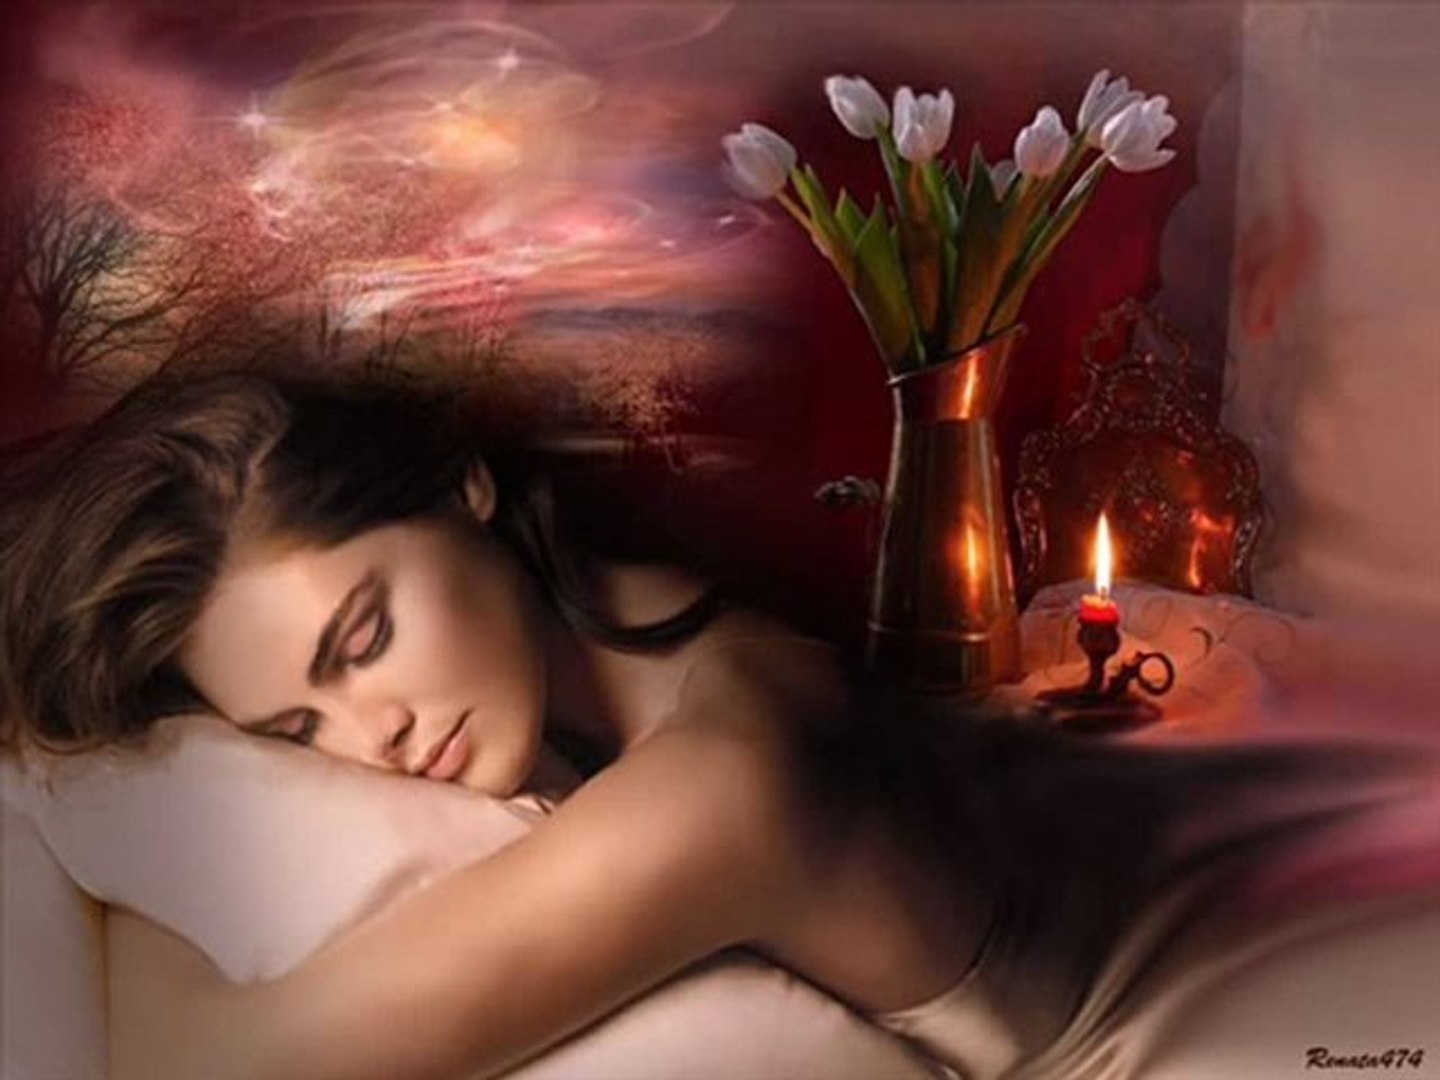 Любимая спи видео. Спокойной ночи нежные. Ночь нежна. Спокойной ночи нежных снов. Спокойной ночи романтические.